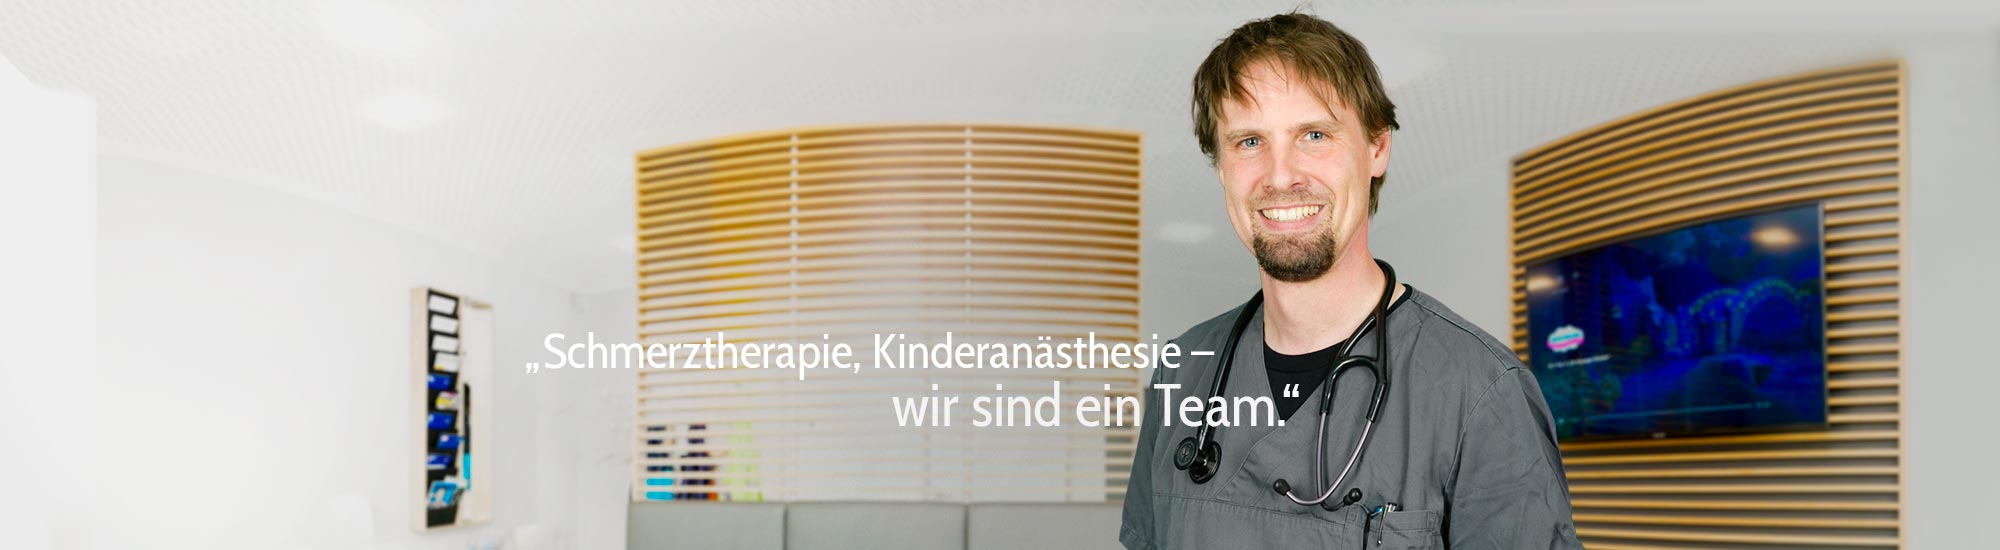 Timo Röhl: Schmerztherapie, Kinderanästhesie: Wir sind ein Team.